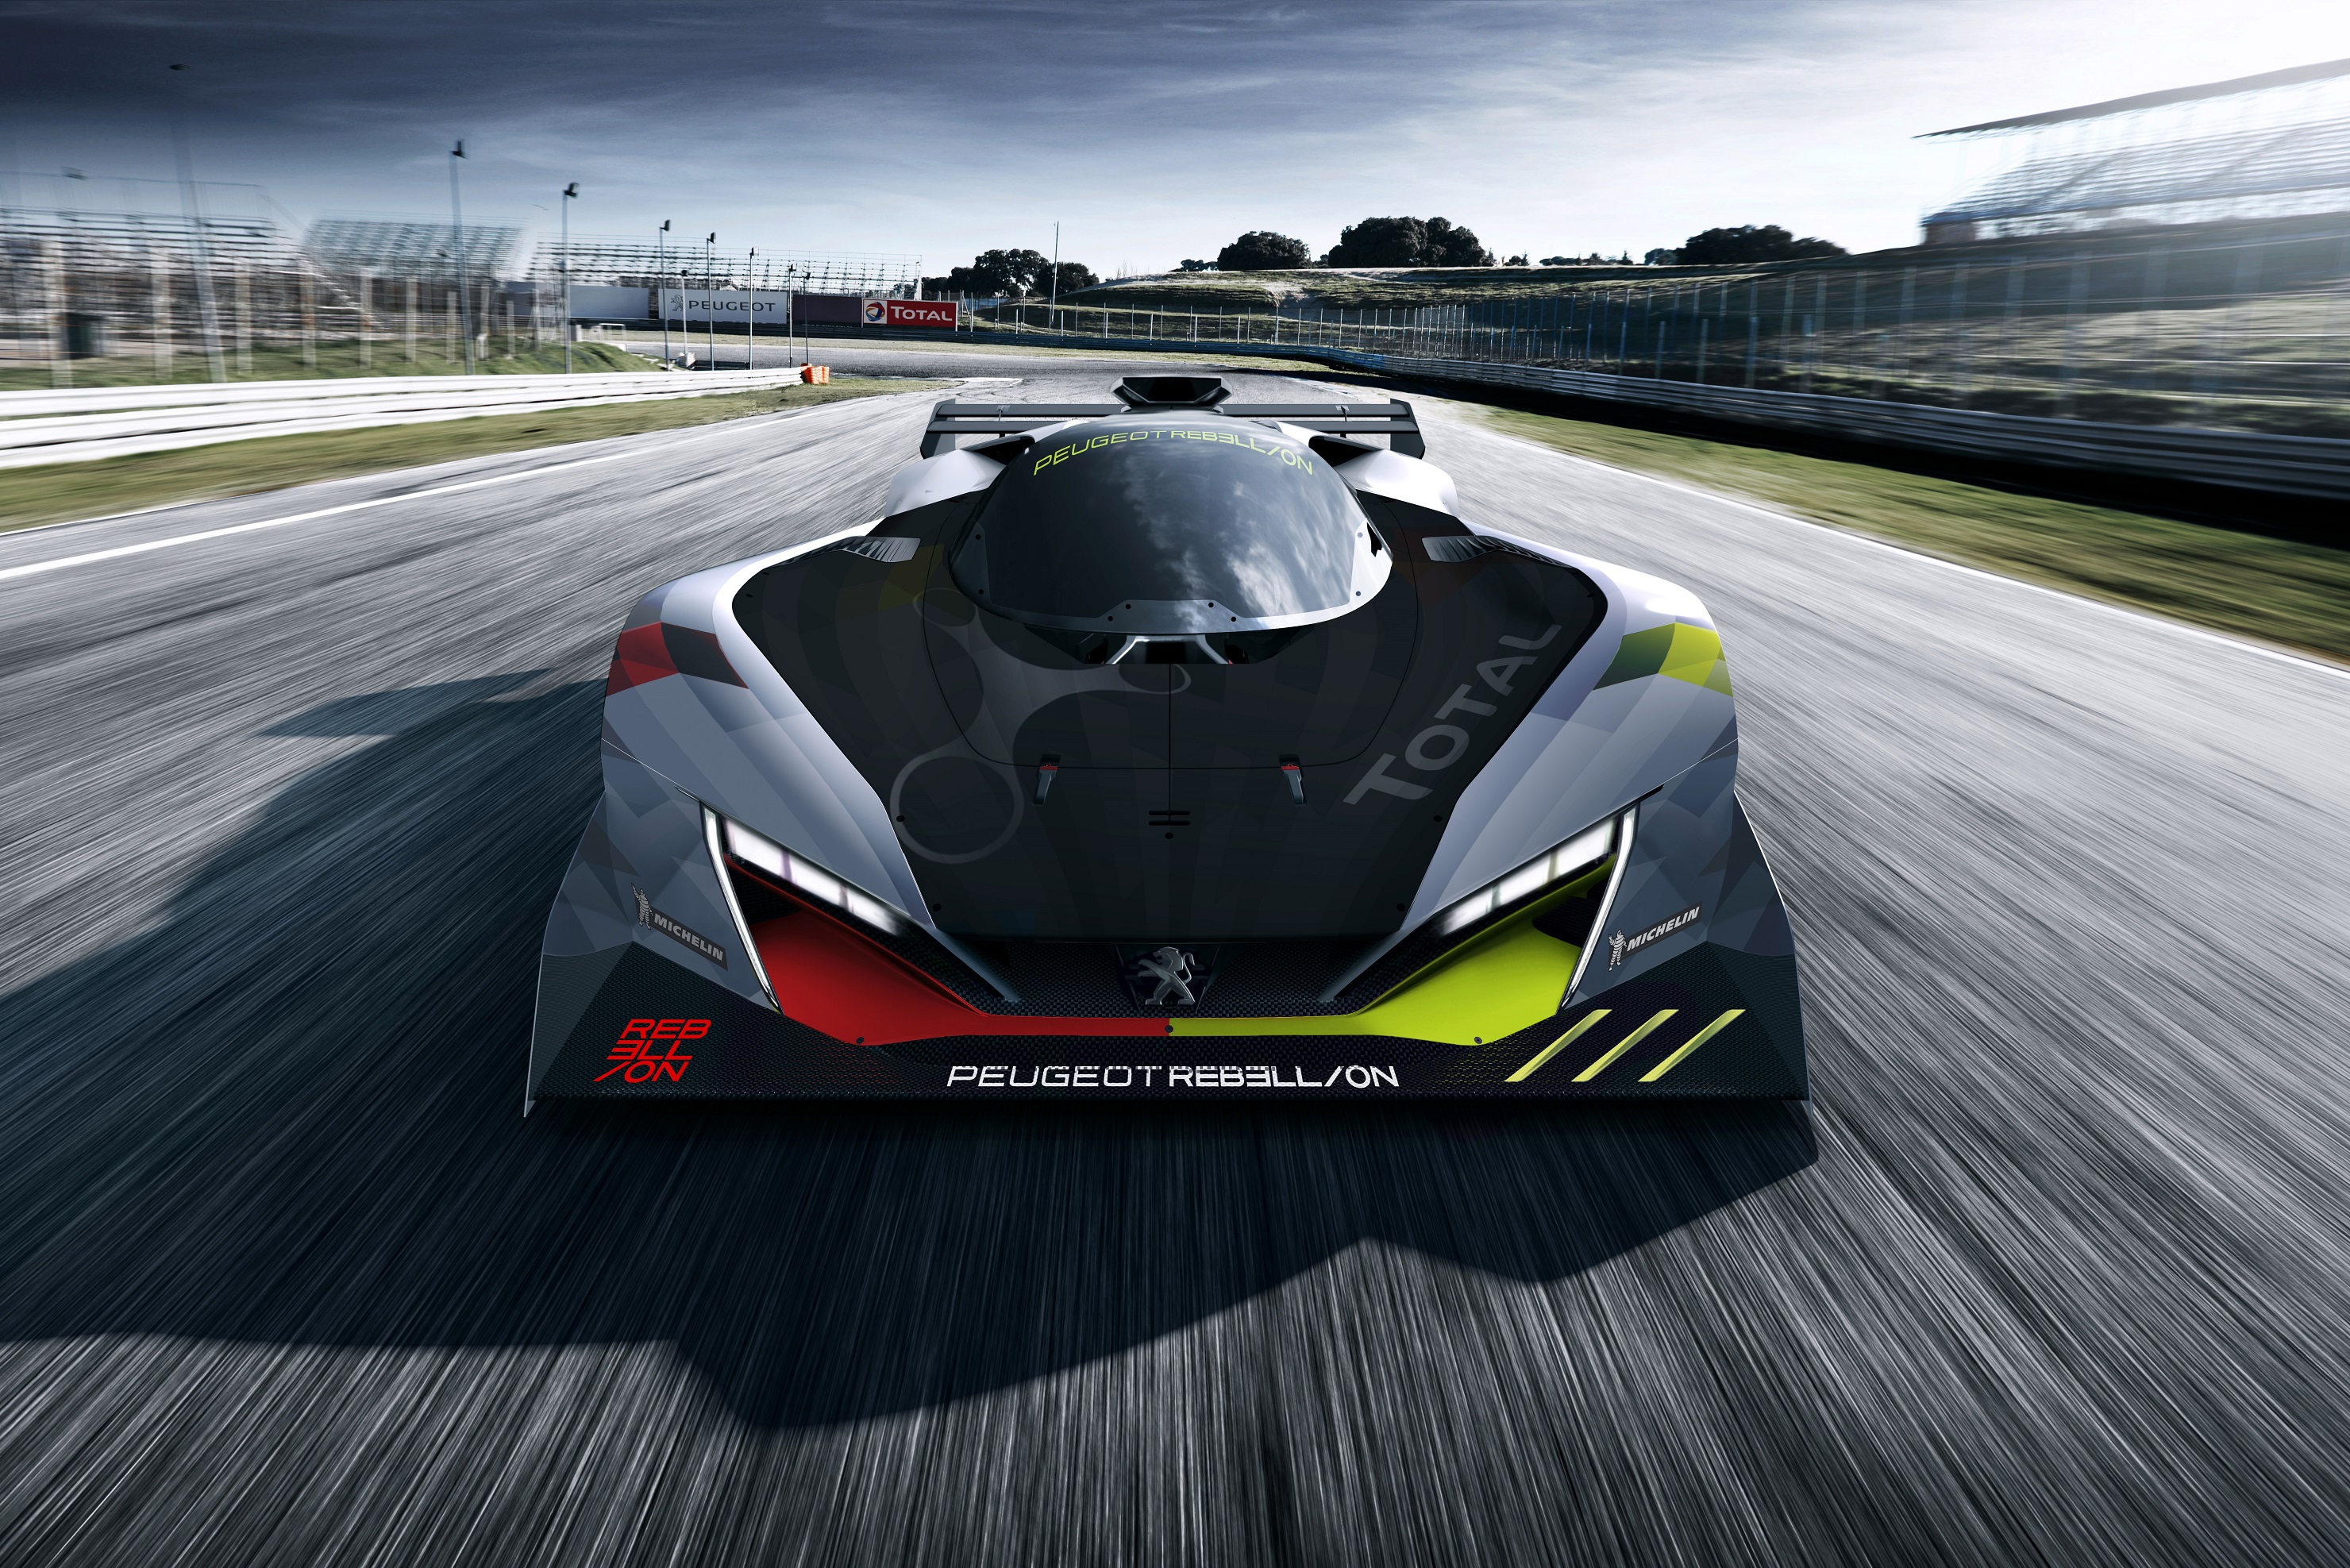 Primeiro esboço do carro da Peugeot Rebellion que correrá em Le Mans em 2022